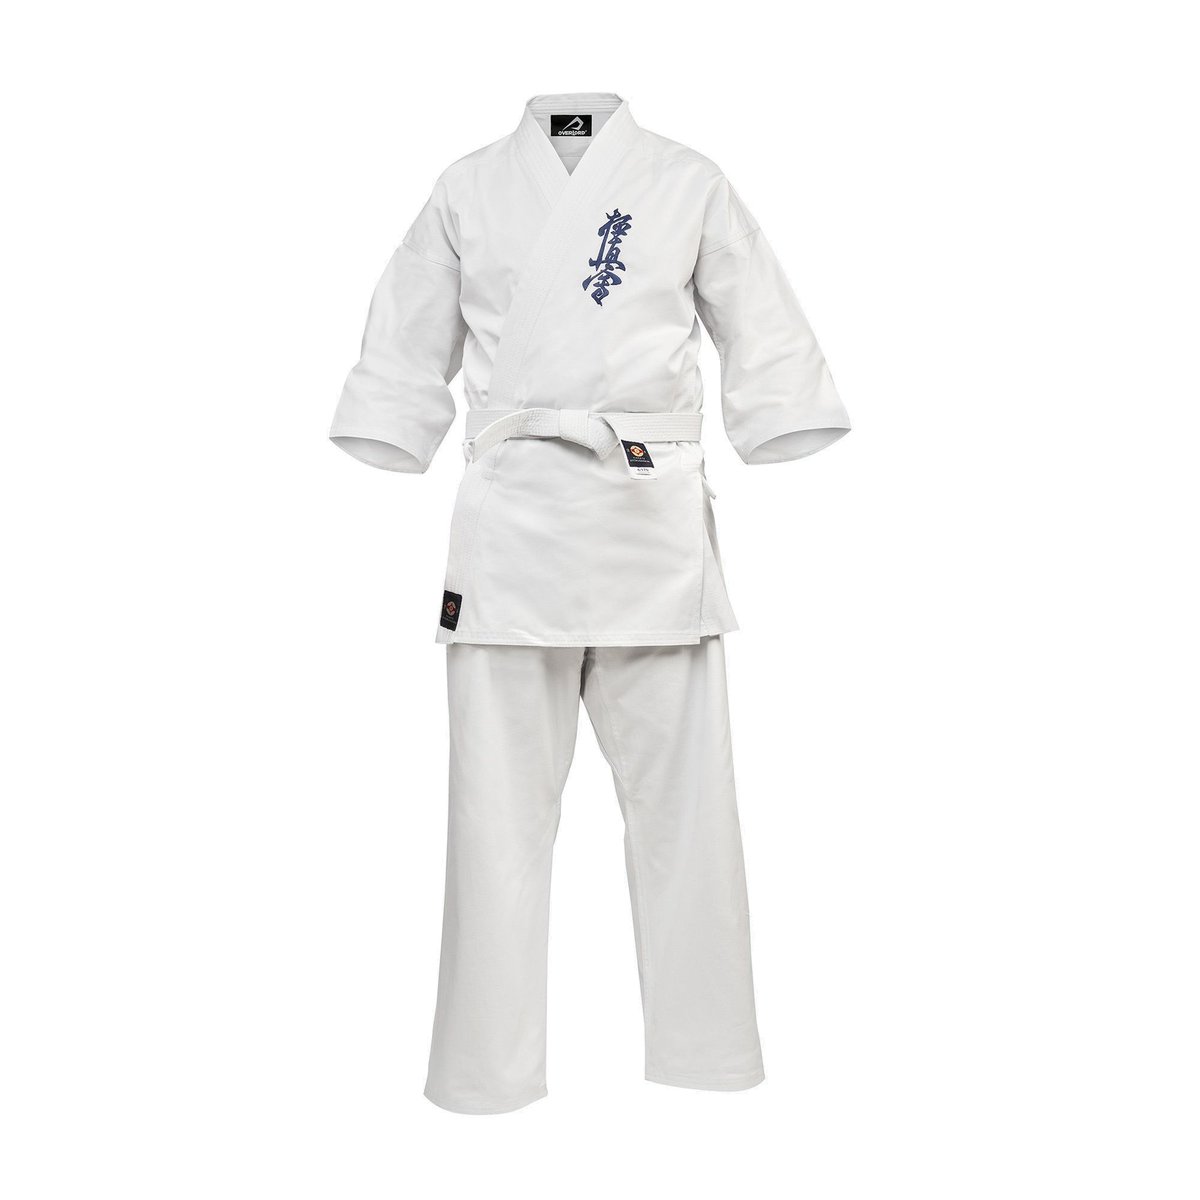 Zdjęcia - Ubrania do sportów walki Karategi Overlord Karate Kyokushin Białe 901120 170